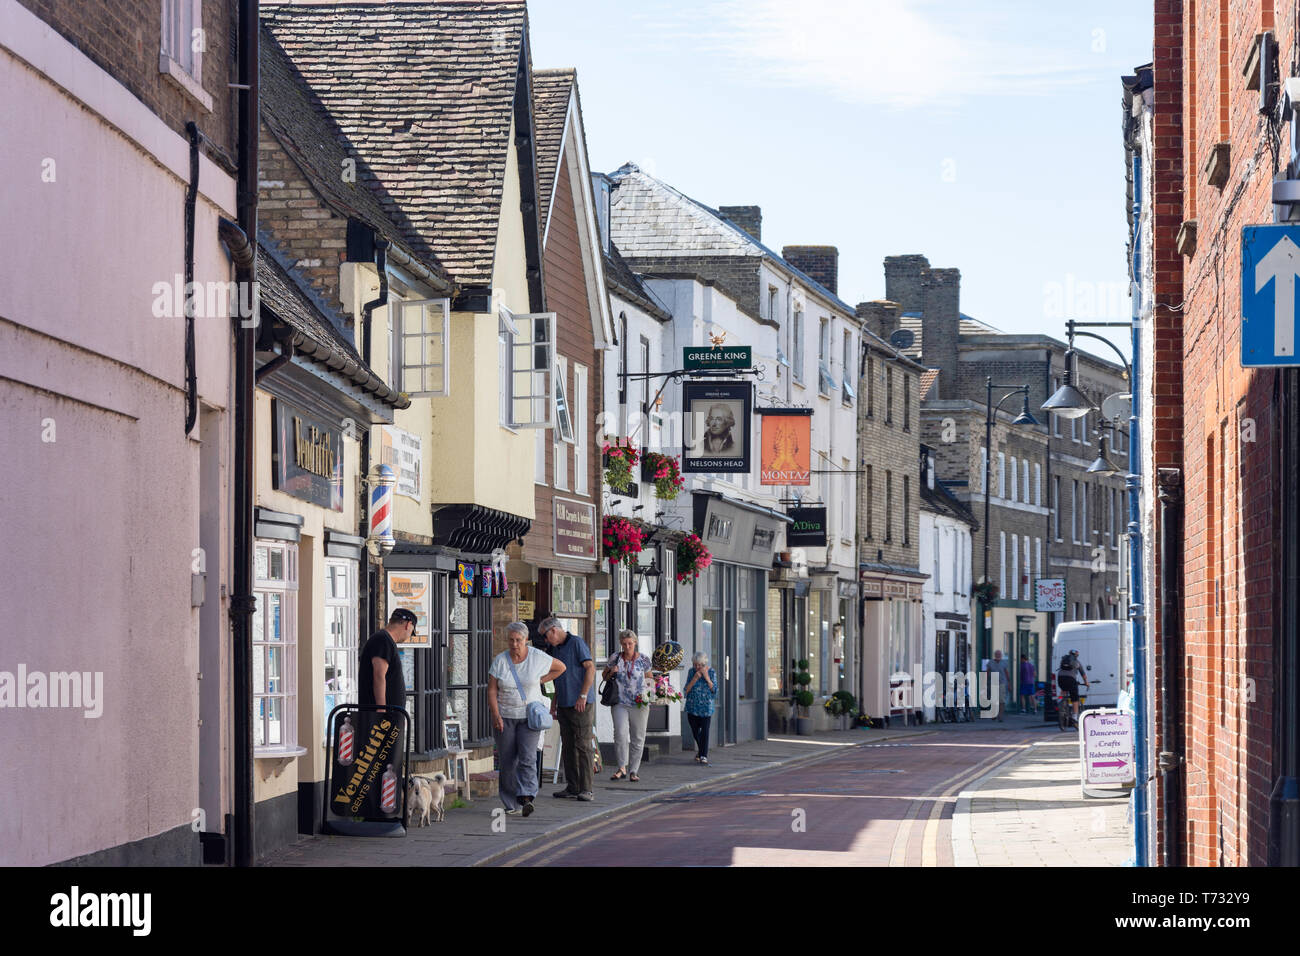 Scena di strada, Maryland, St Ives, Cambridgeshire, England, Regno Unito Foto Stock